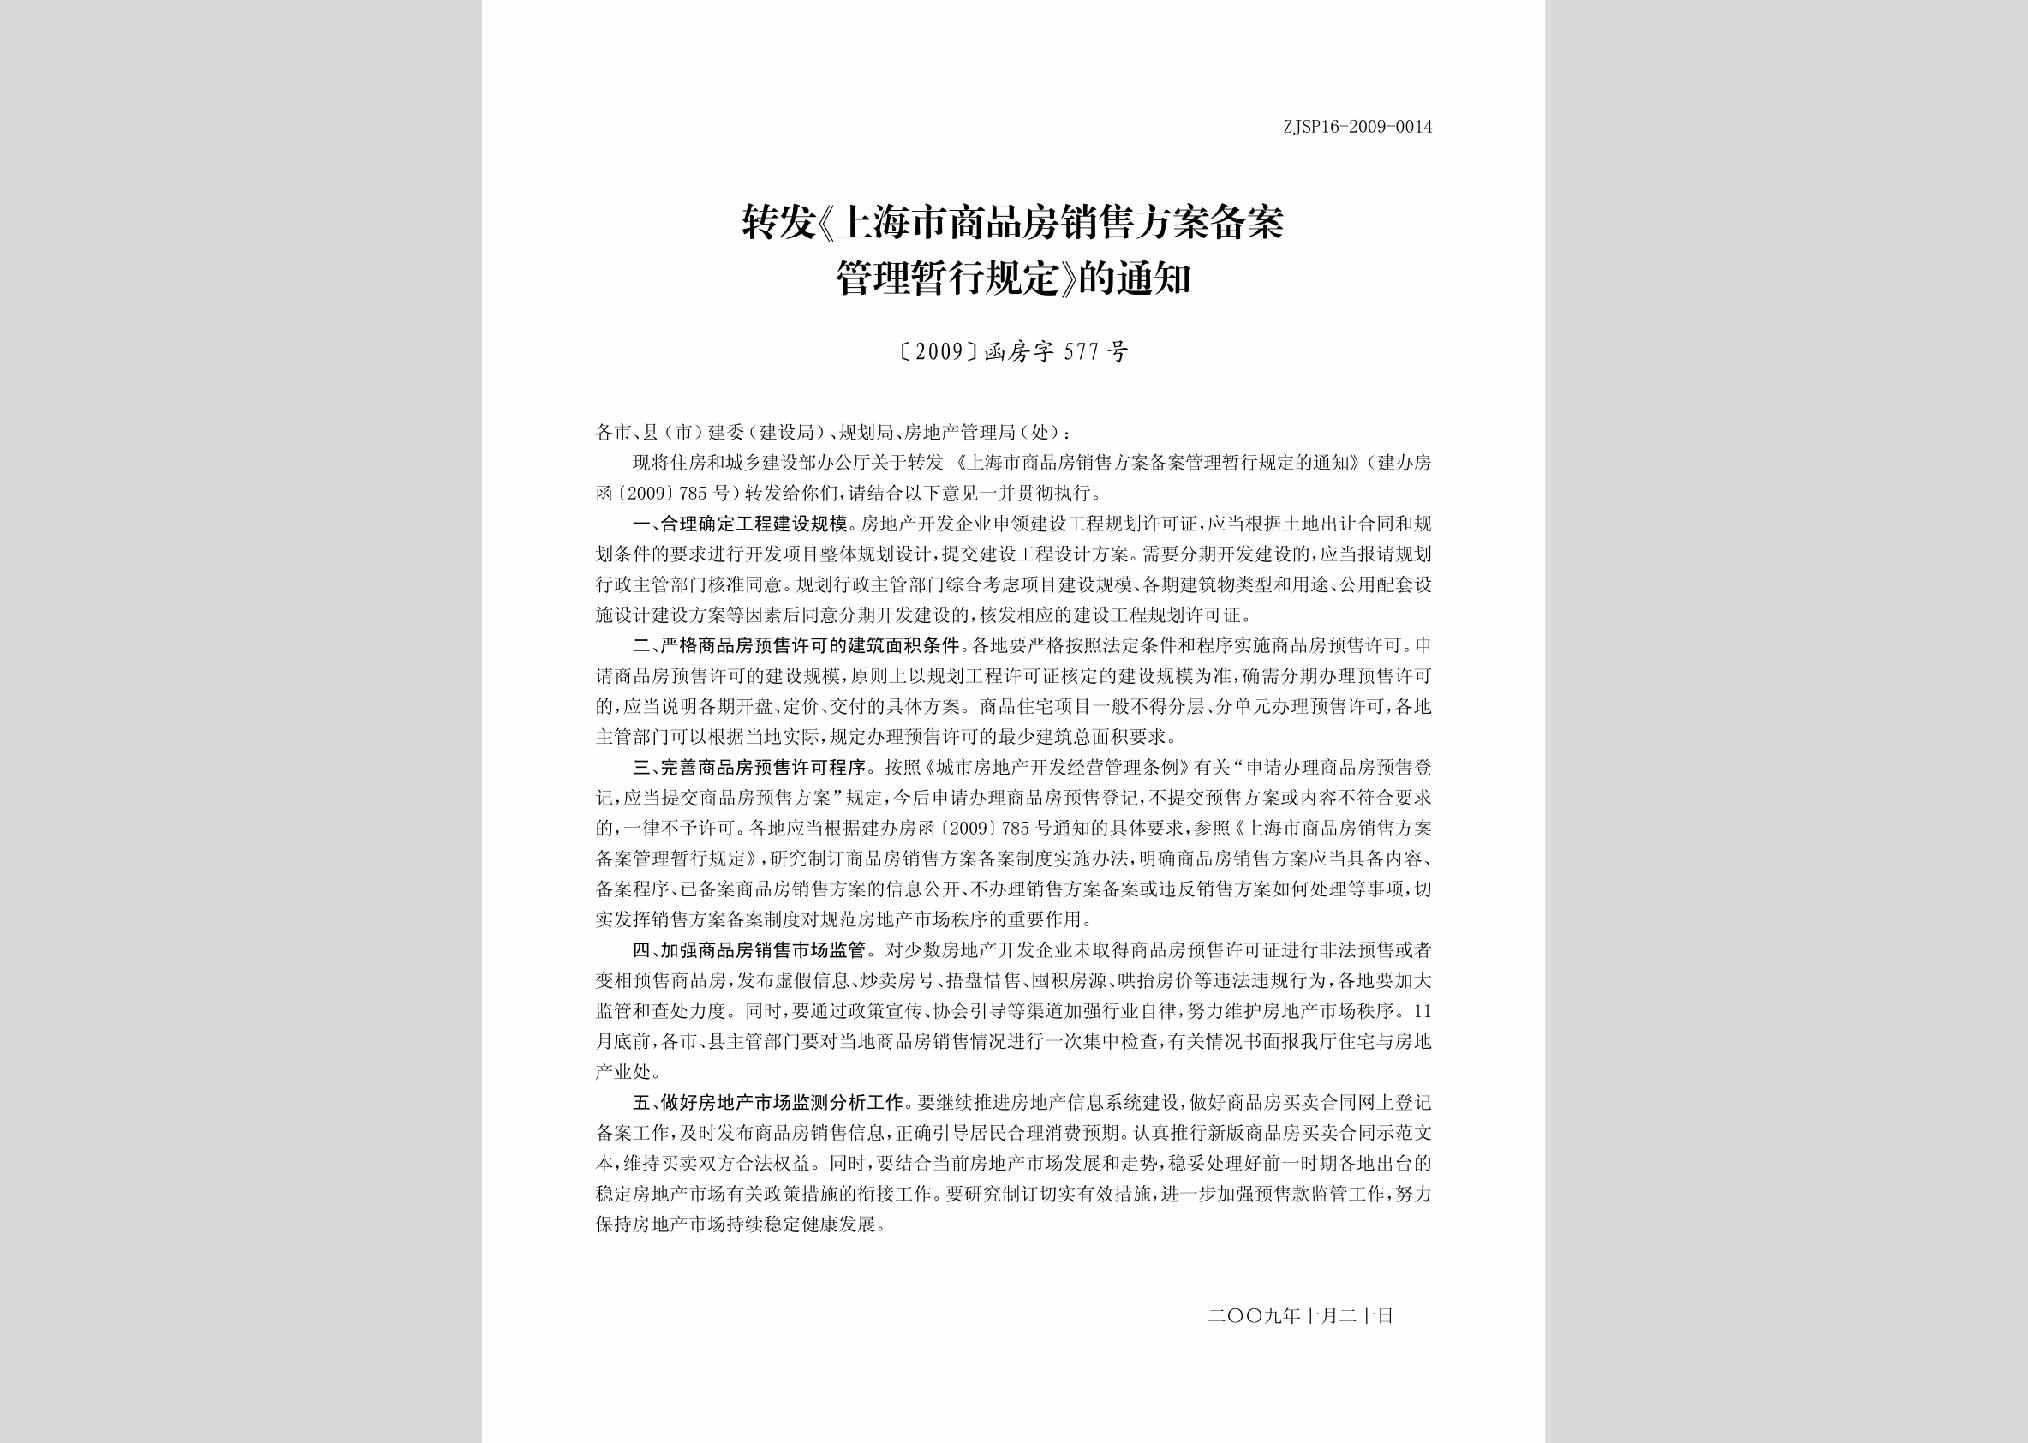 [2009]函房字577号：转发《上海市商品房销售方案备案管理暂行规定》的通知